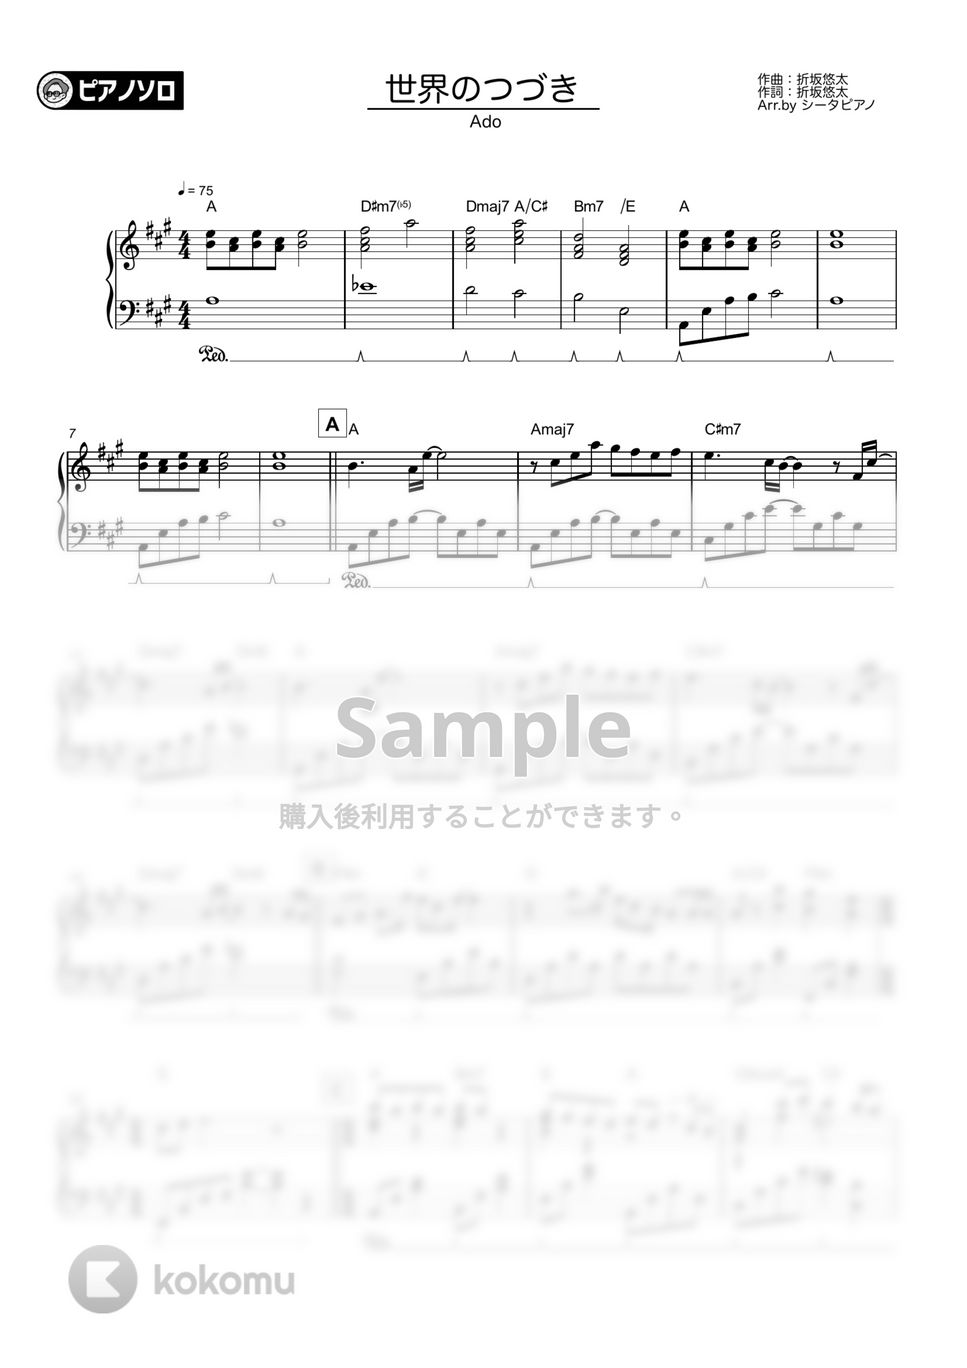 Ado - 世界のつづき by シータピアノ